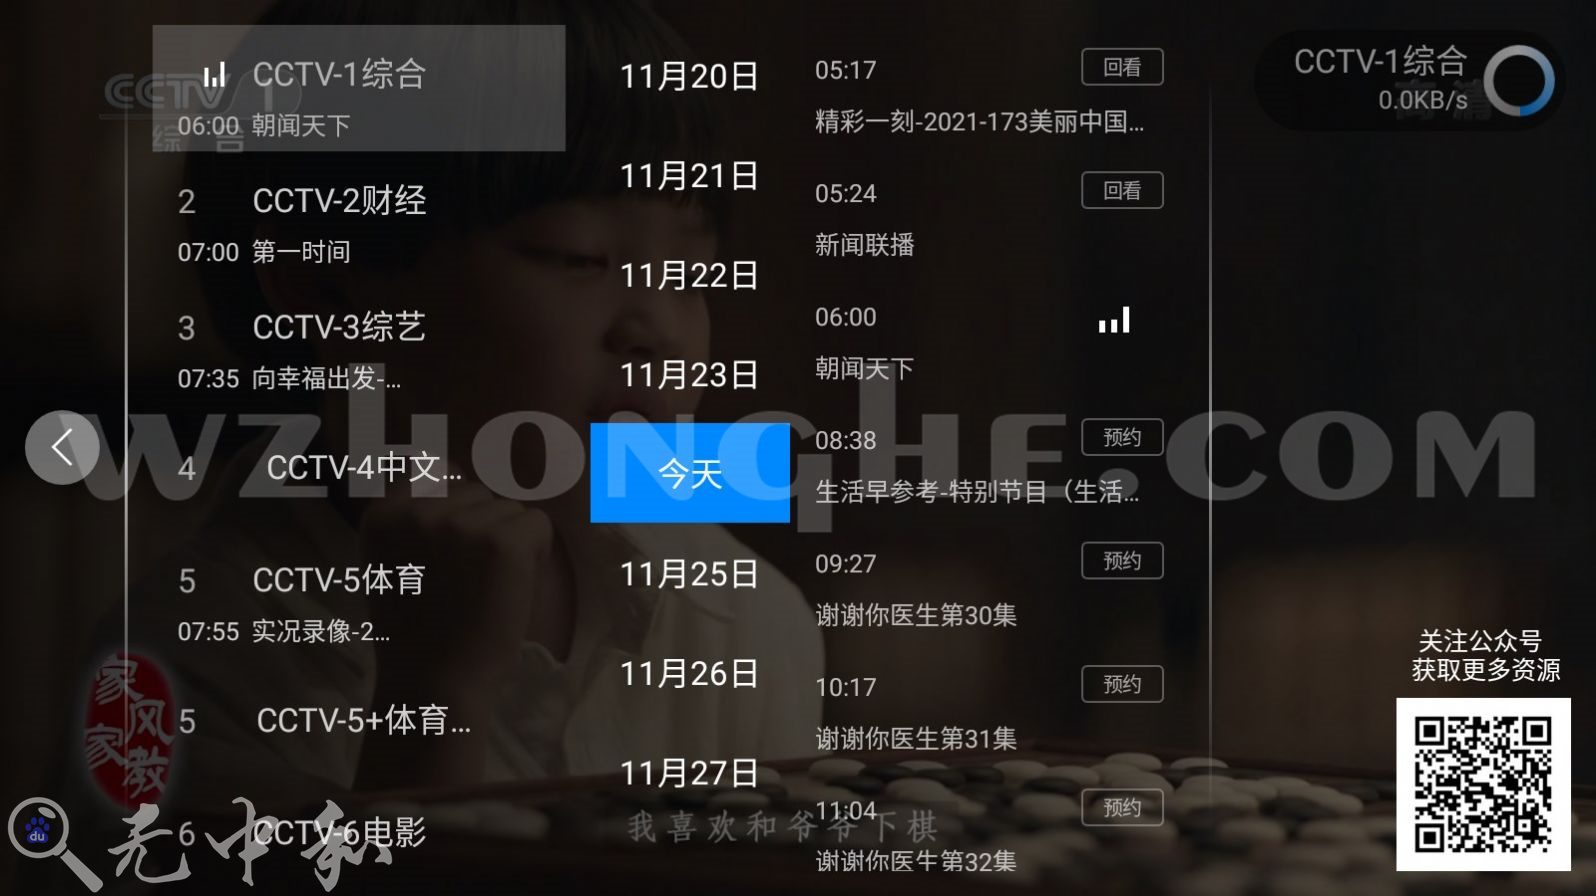 神鸟电视TV(电视直播软件) - 无中和wzhonghe.com -3